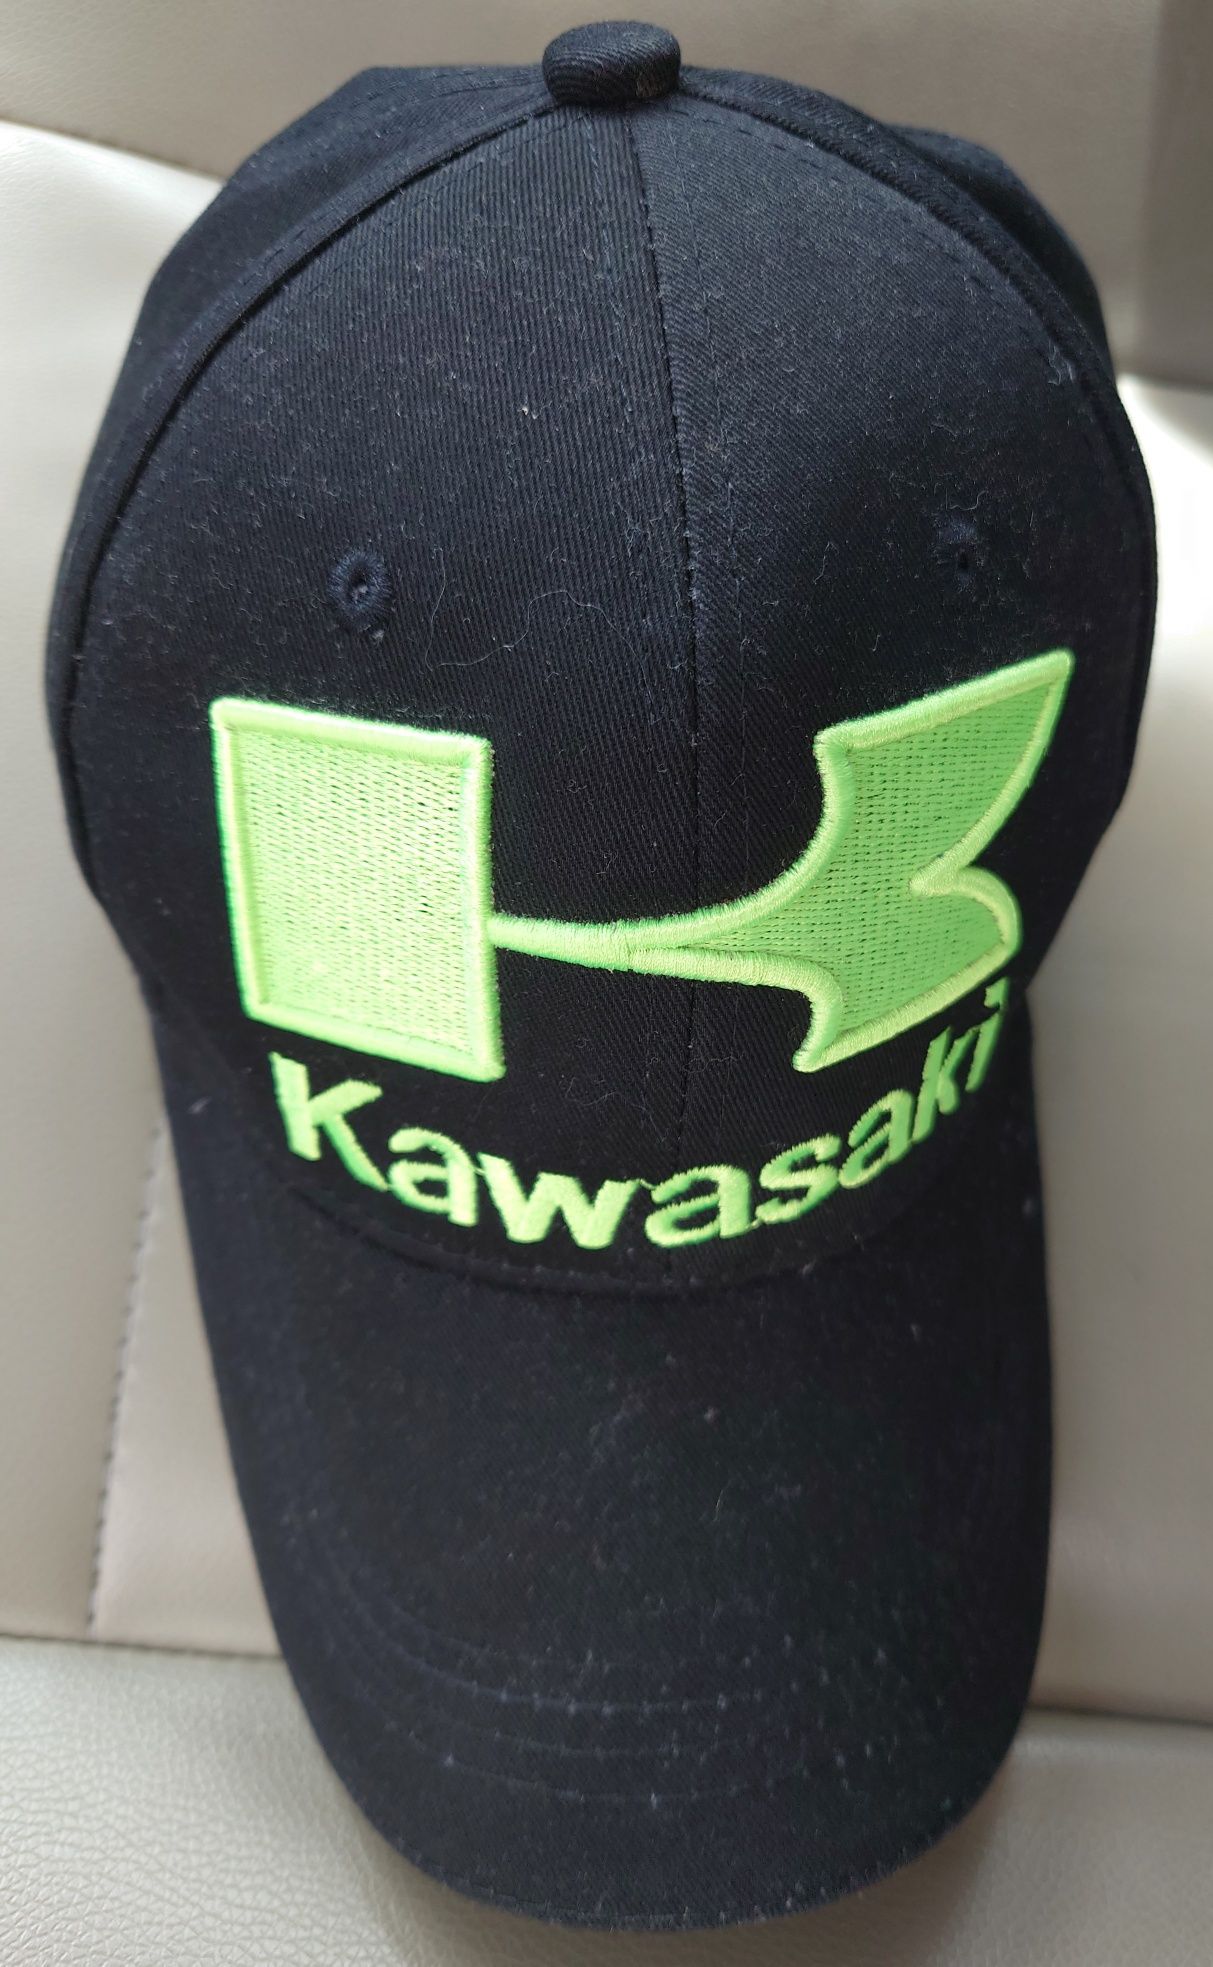 Kawasaki Boné novo